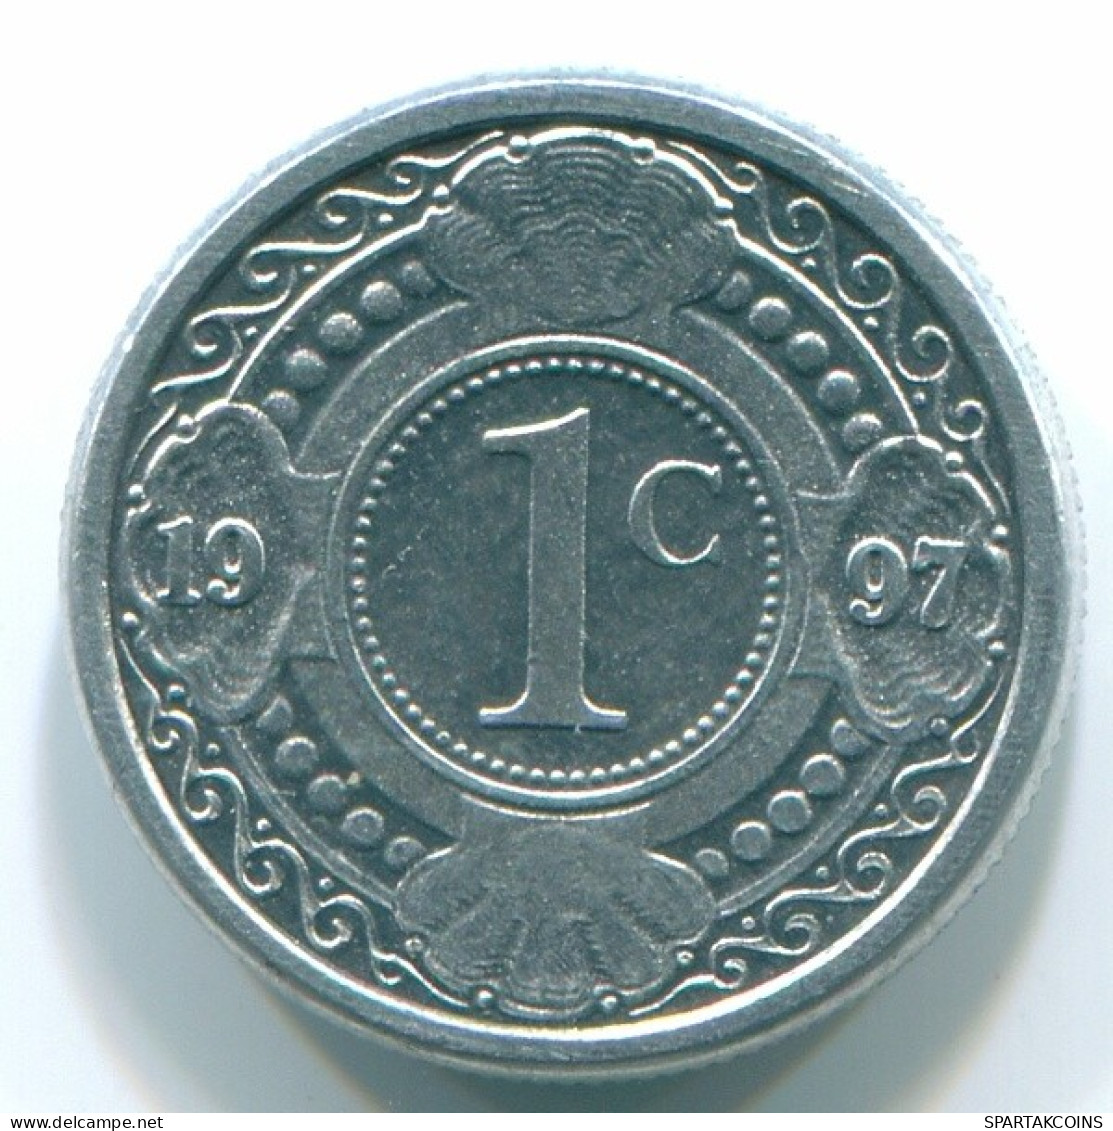 1 CENT 1996 NETHERLANDS ANTILLES Aluminium Colonial Coin #S13147.U.A - Antilles Néerlandaises